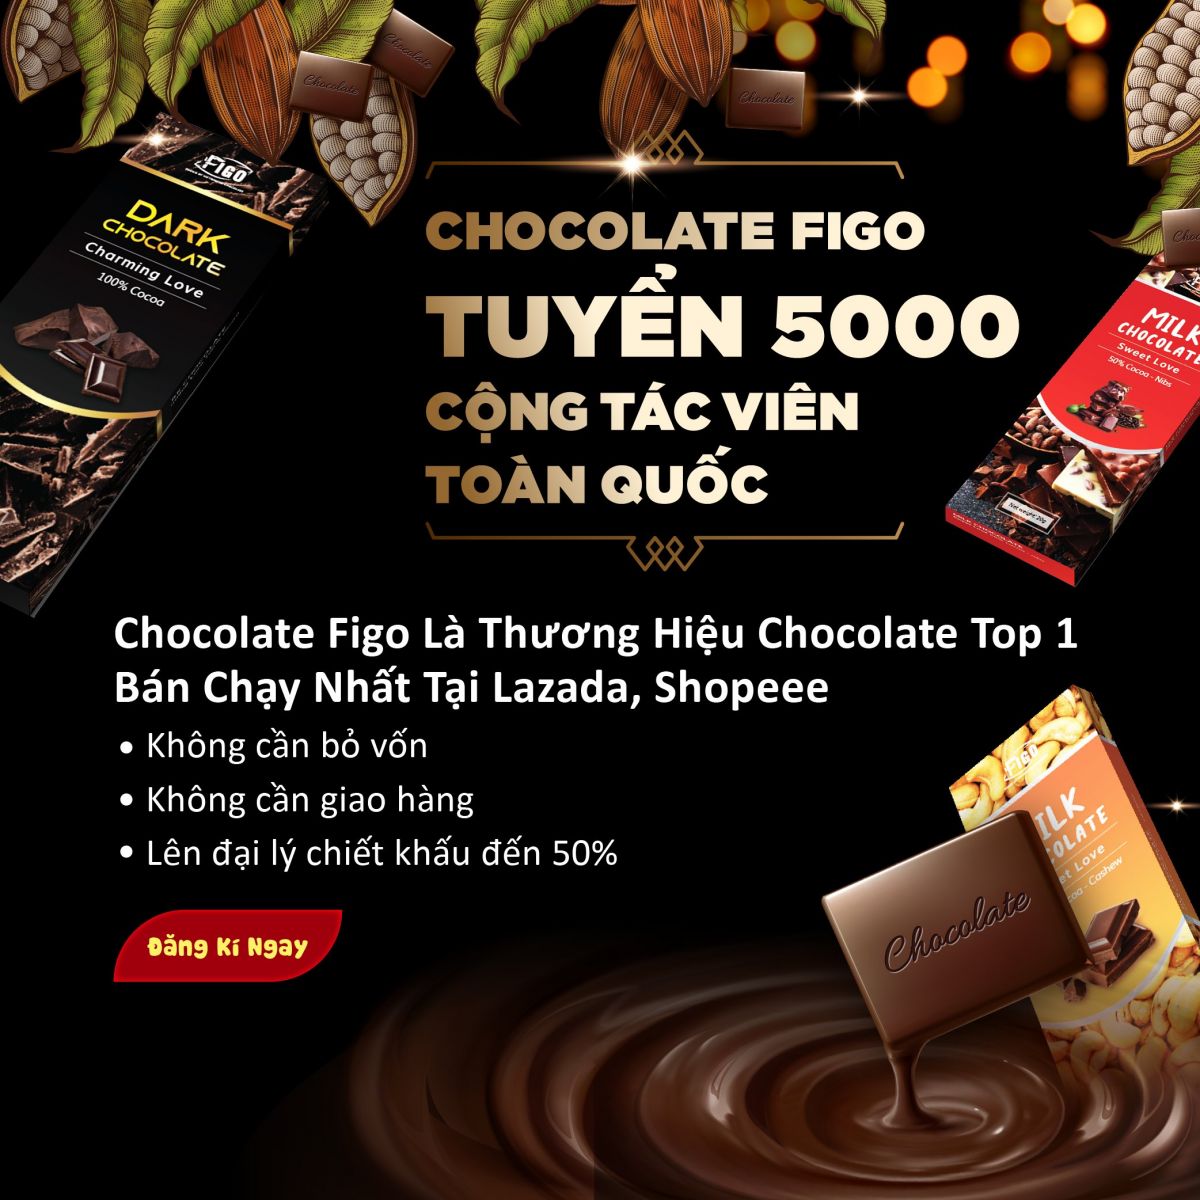 Chocolate Figo tuyển Đại lý Phân Phối và Cộng tác viên bán Socola Valentine 2019 toàn quốc.